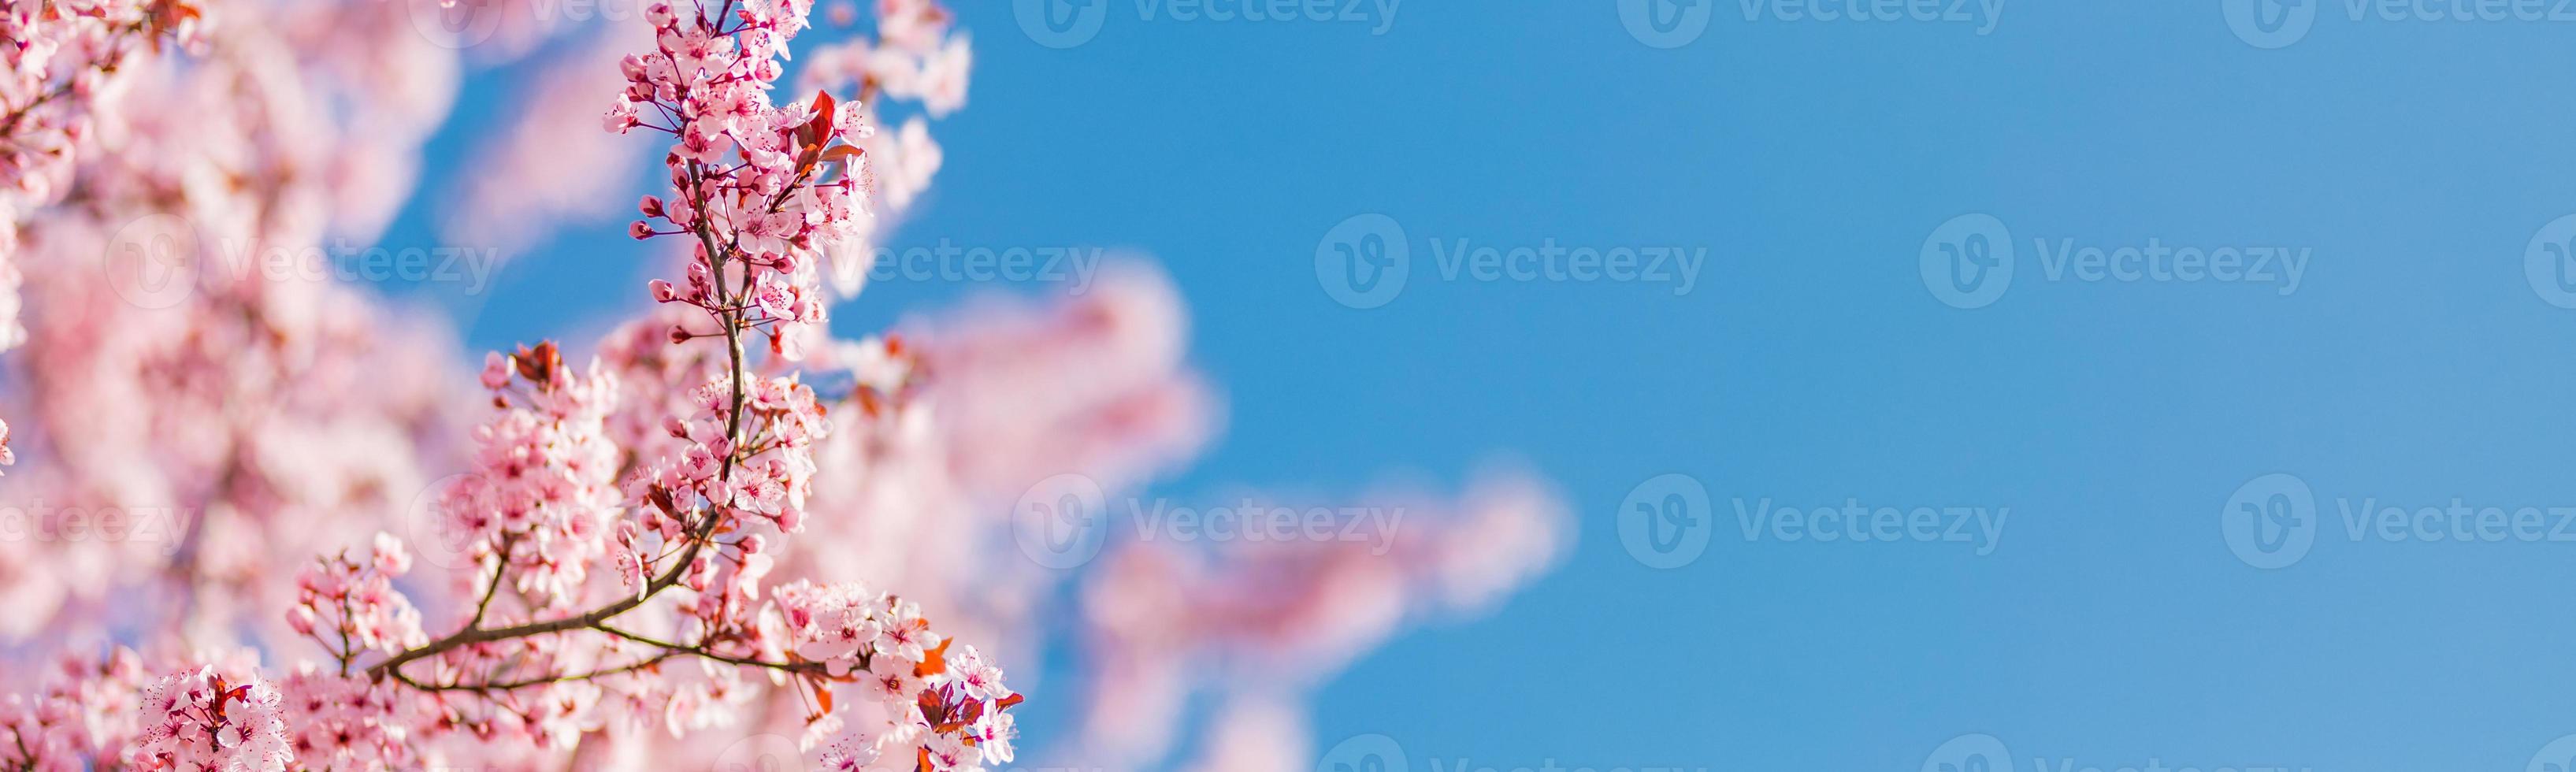 borda de primavera ou arte de fundo com flor rosa. bela cena da natureza com árvore florescendo e reflexo do sol. dia ensolarado, modelo de banner maravilhoso da primavera foto